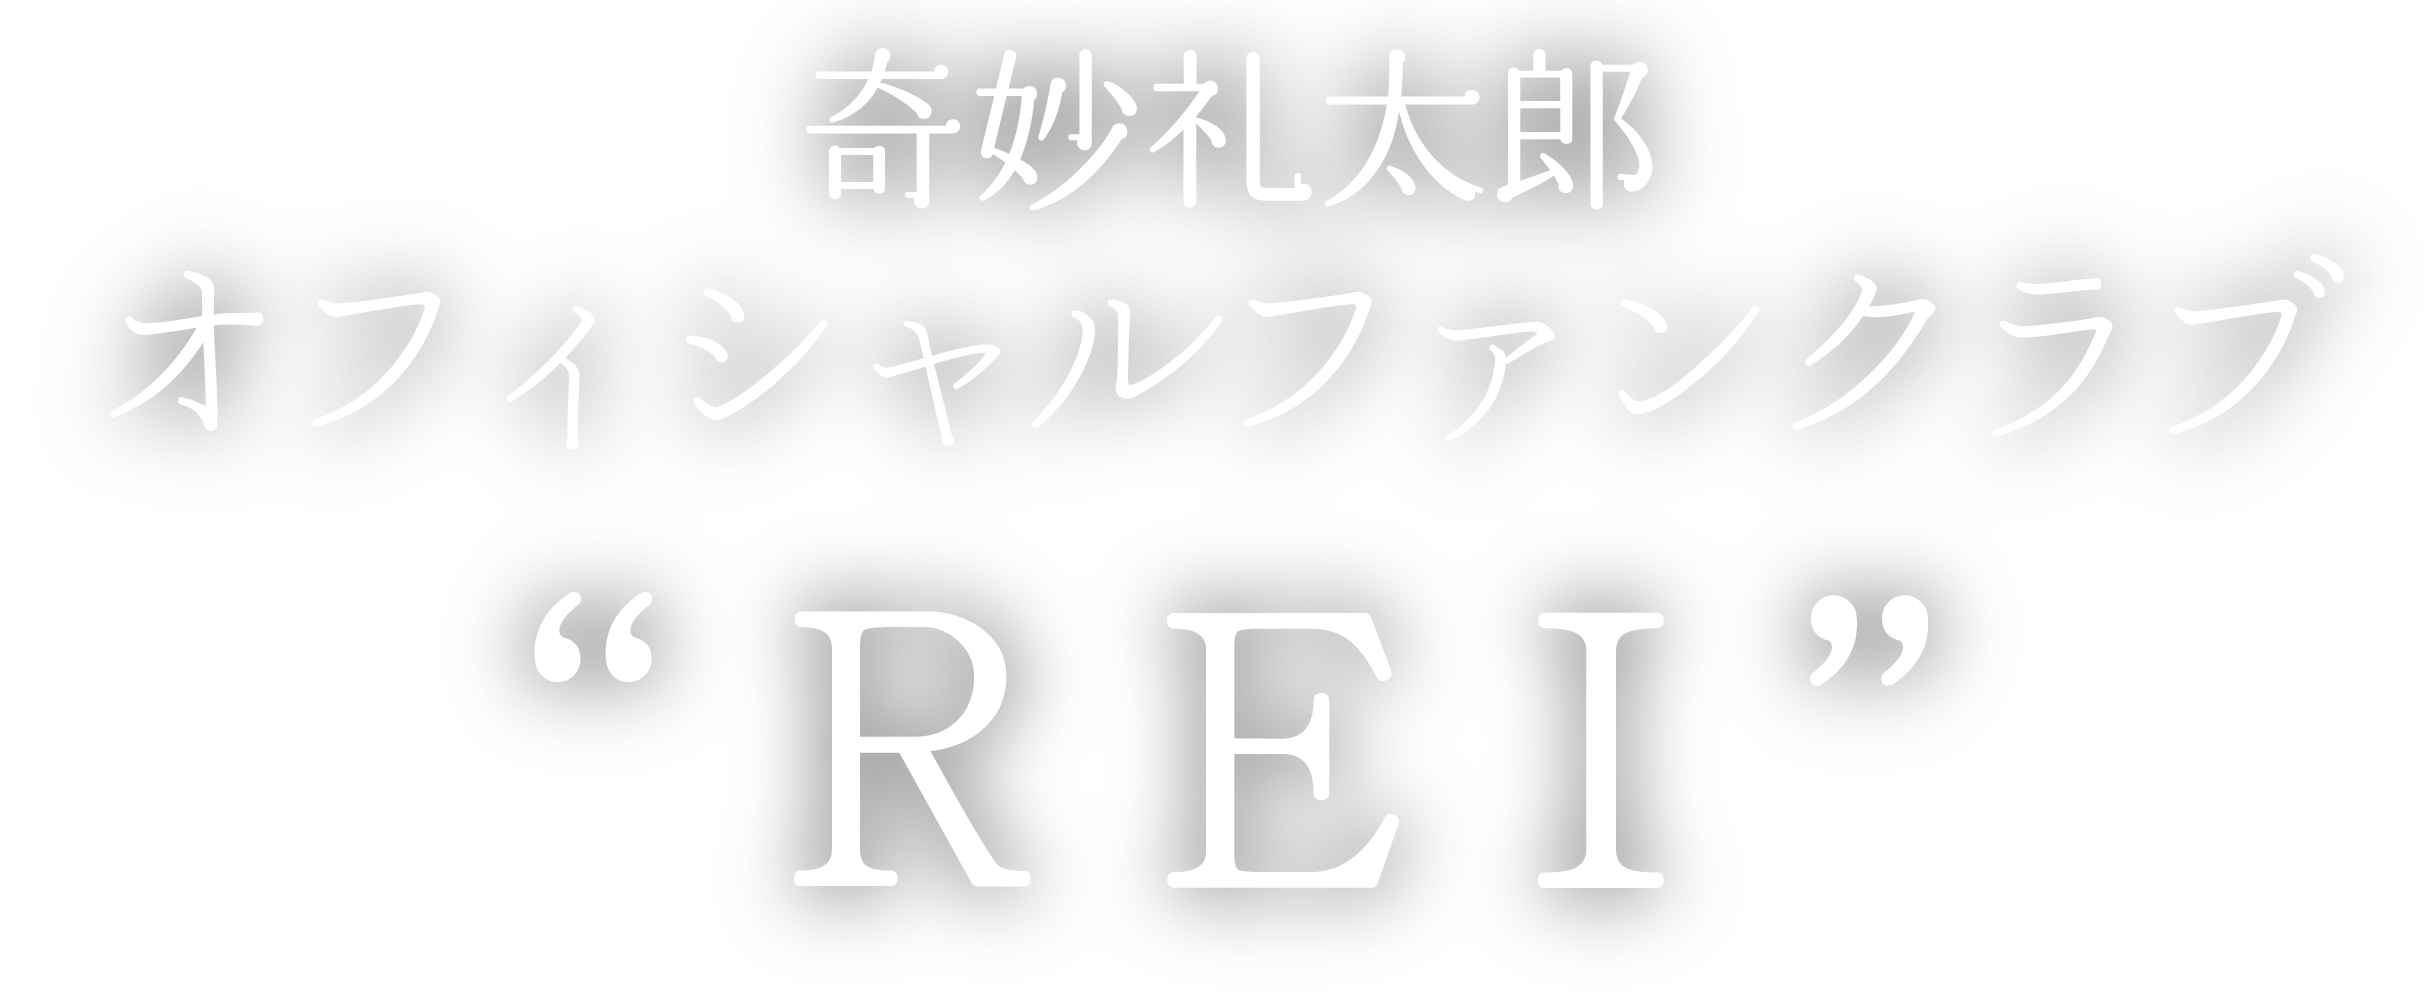 奇妙礼太郎 オフィシャルファンクラブ “REI”